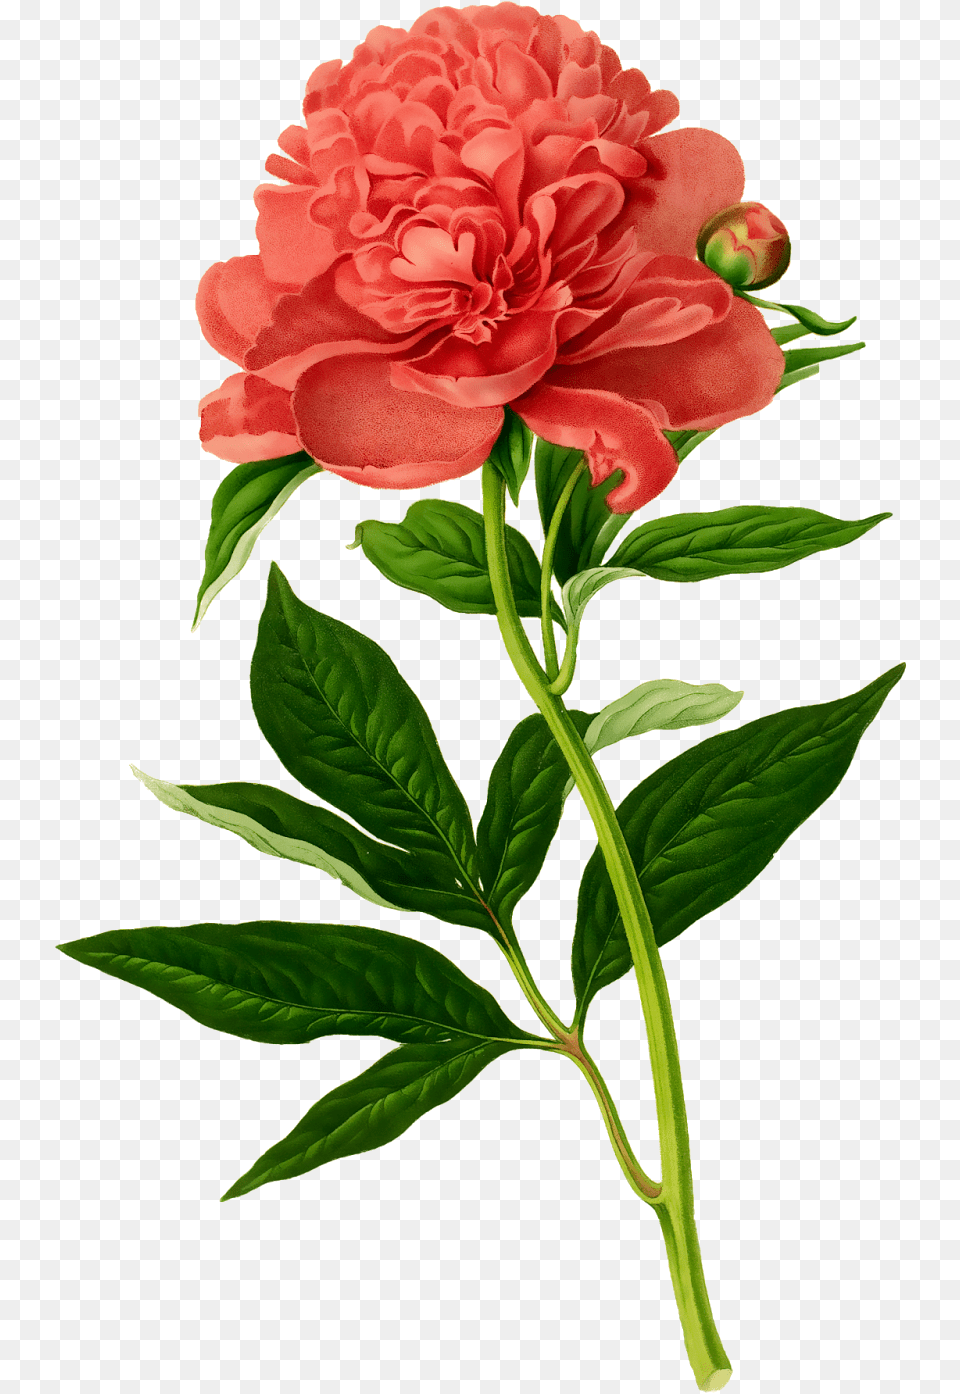 Botanical Illustration, Flower, Plant, Rose, Carnation Png Image